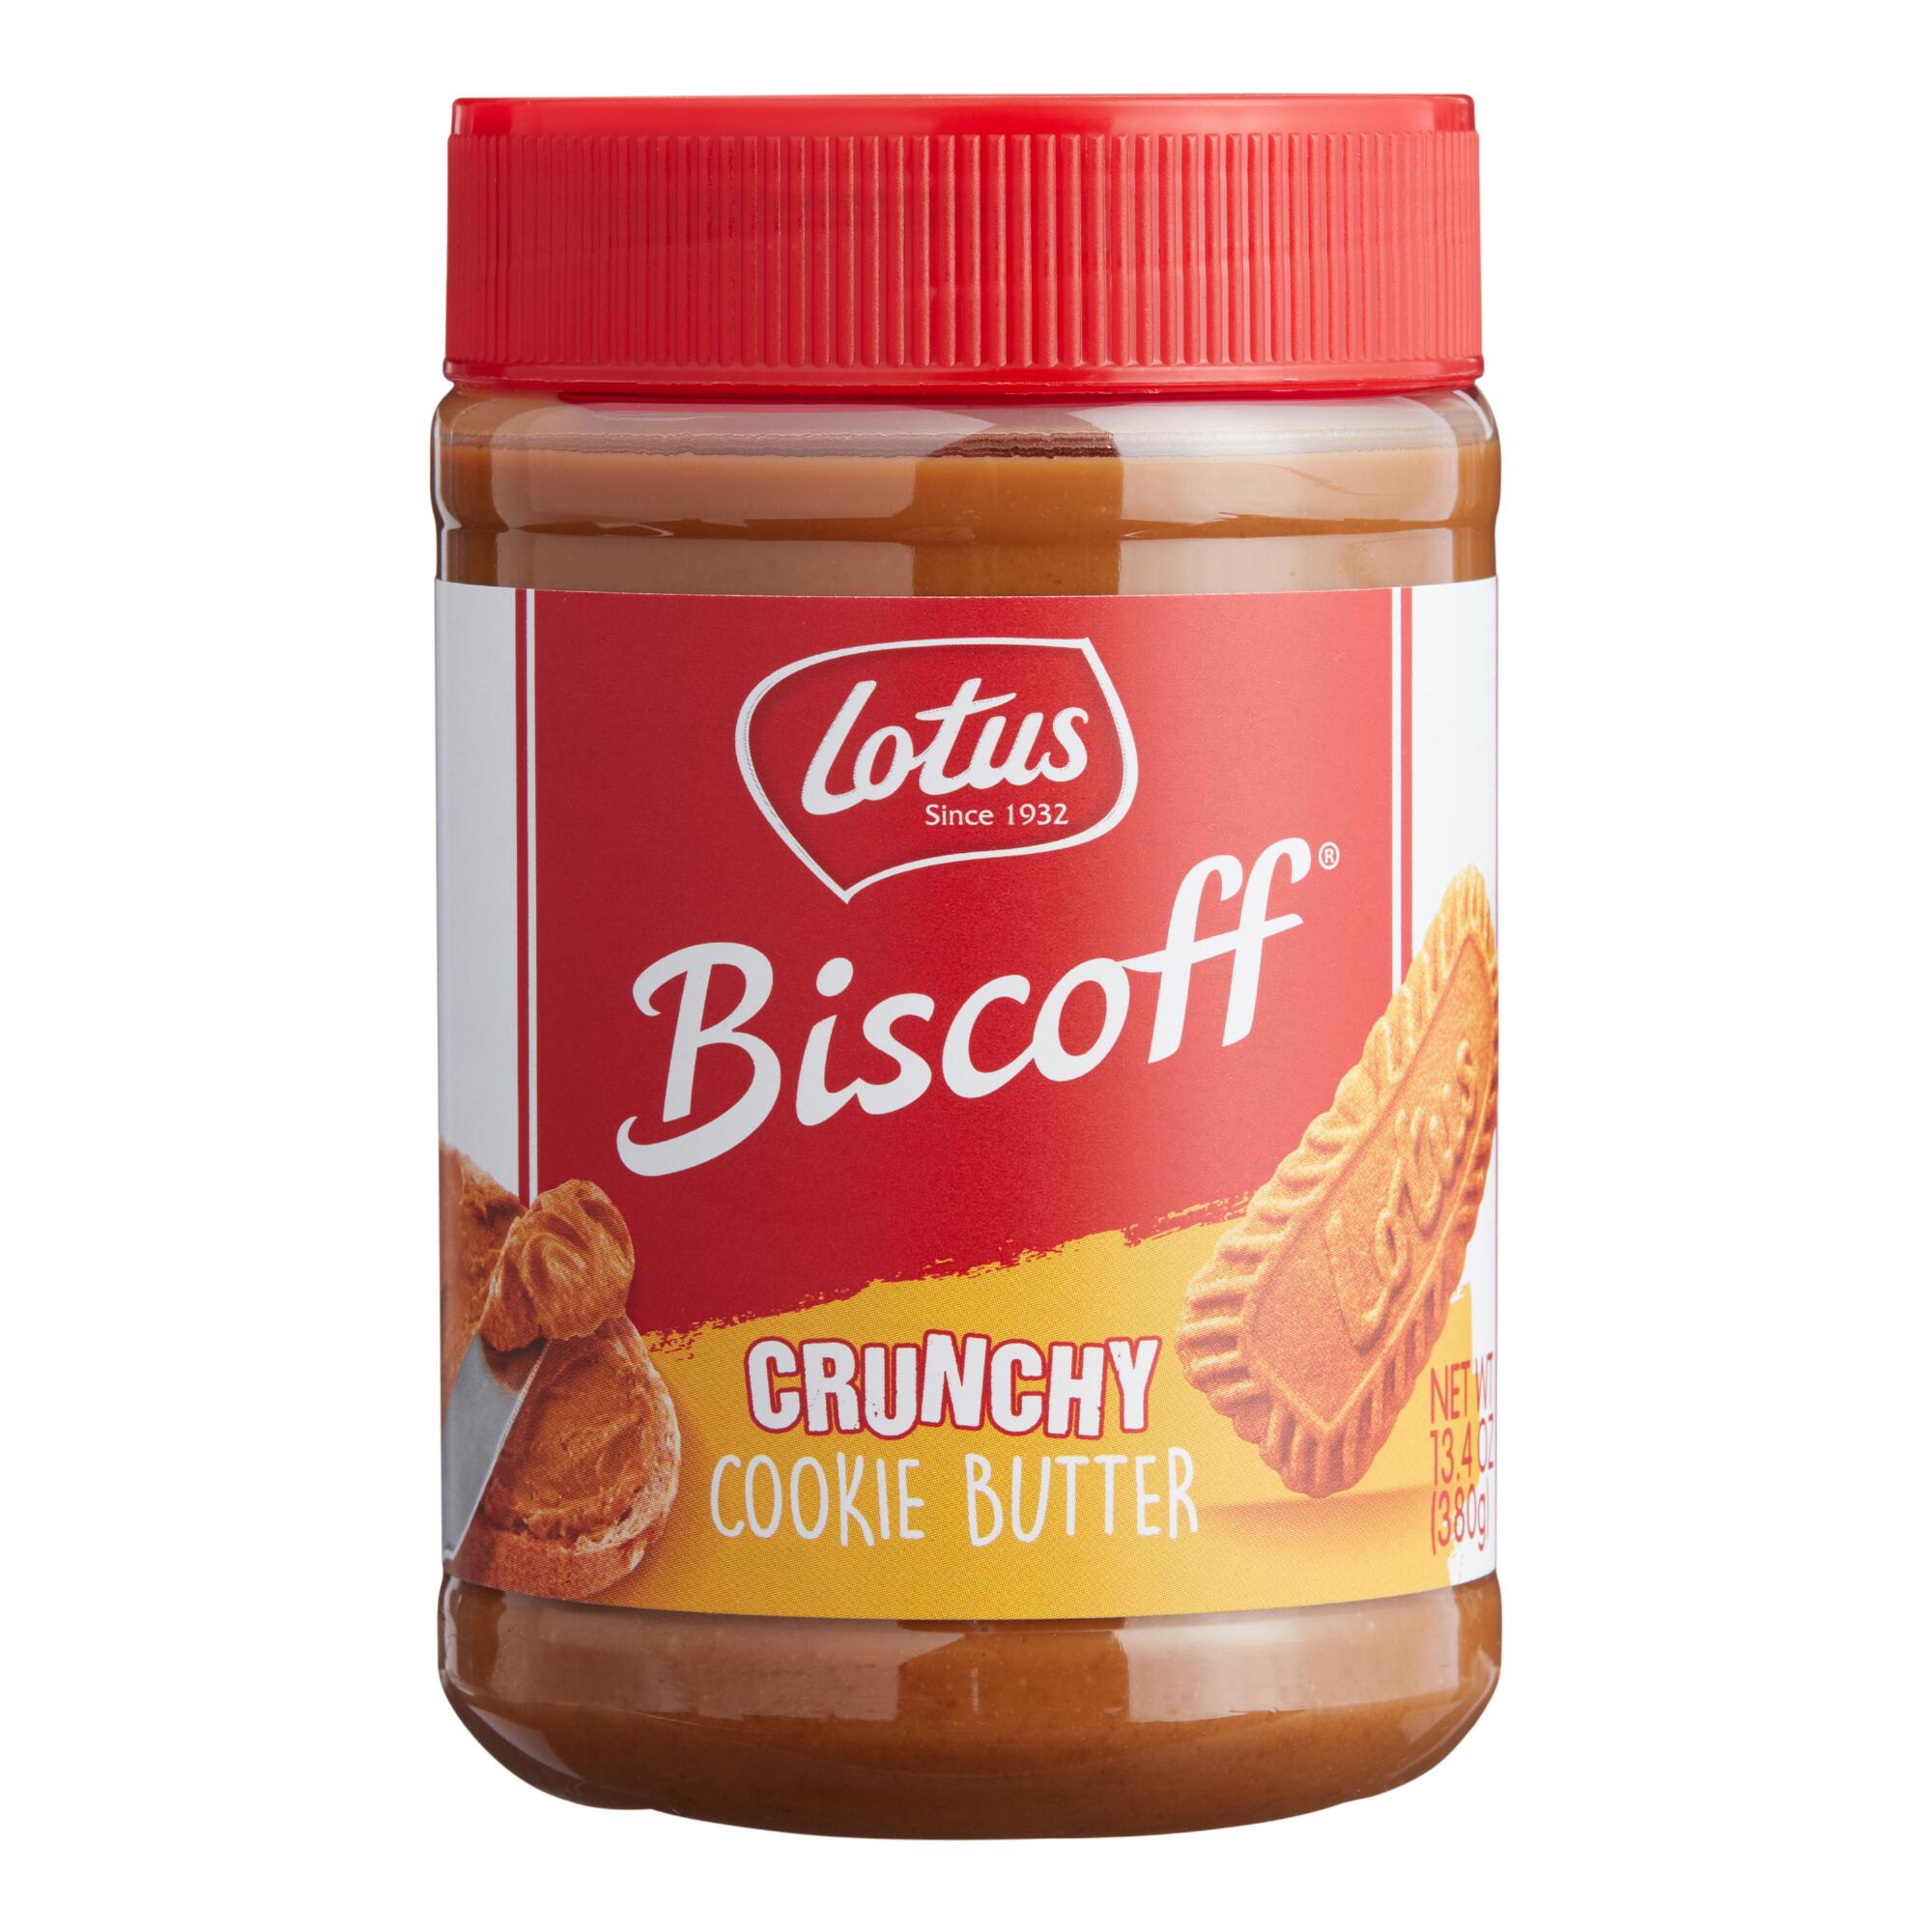 Biscoff Crunchy Cookie Butter Spread by World Market